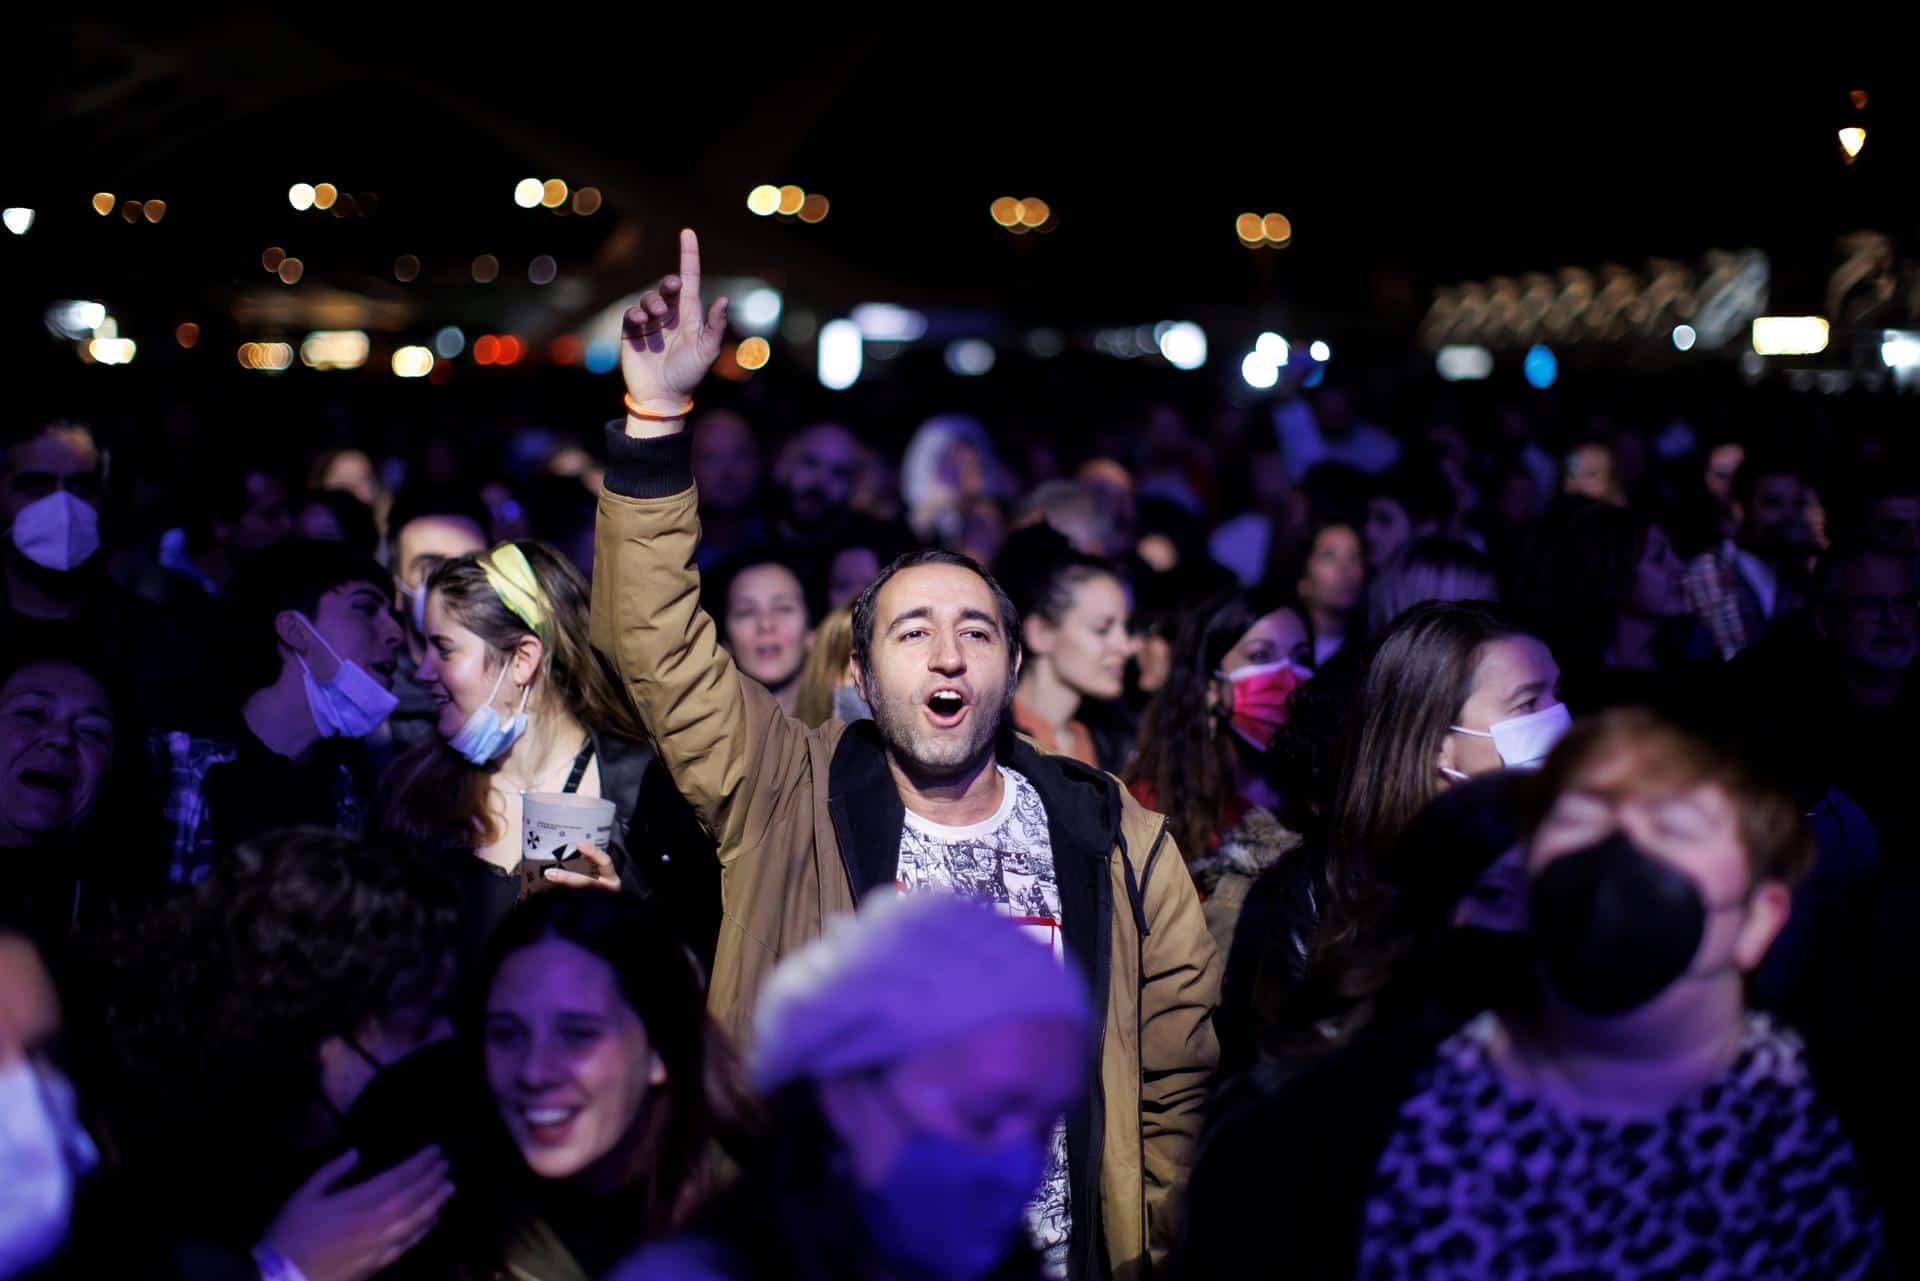 Preocupación en Europa por los ataques con jeringuillas en discotecas y festivales